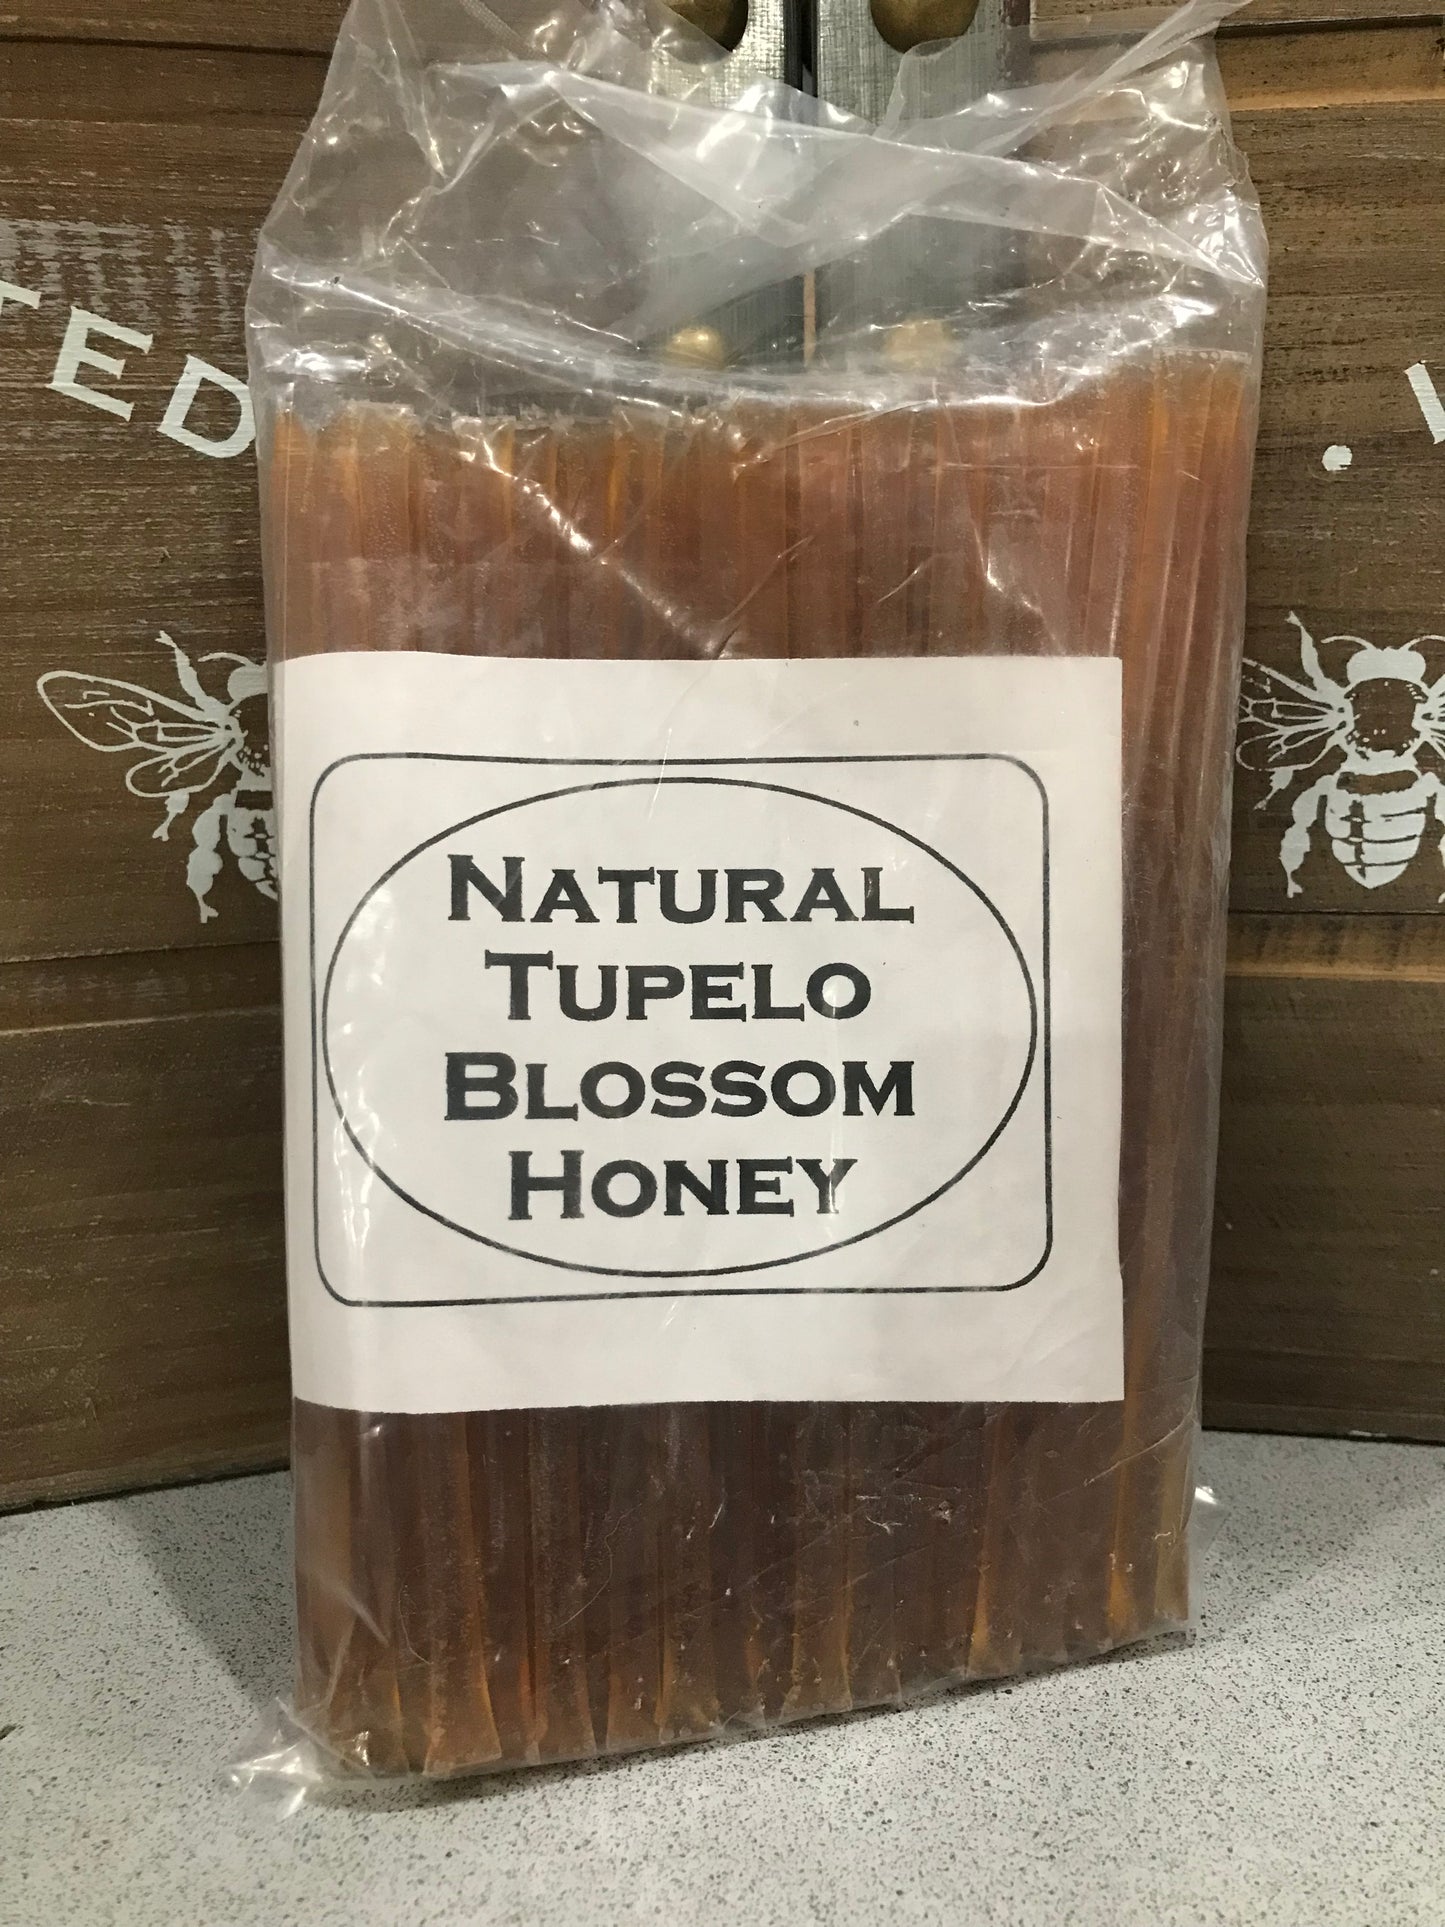 Honey sticks bags of 100